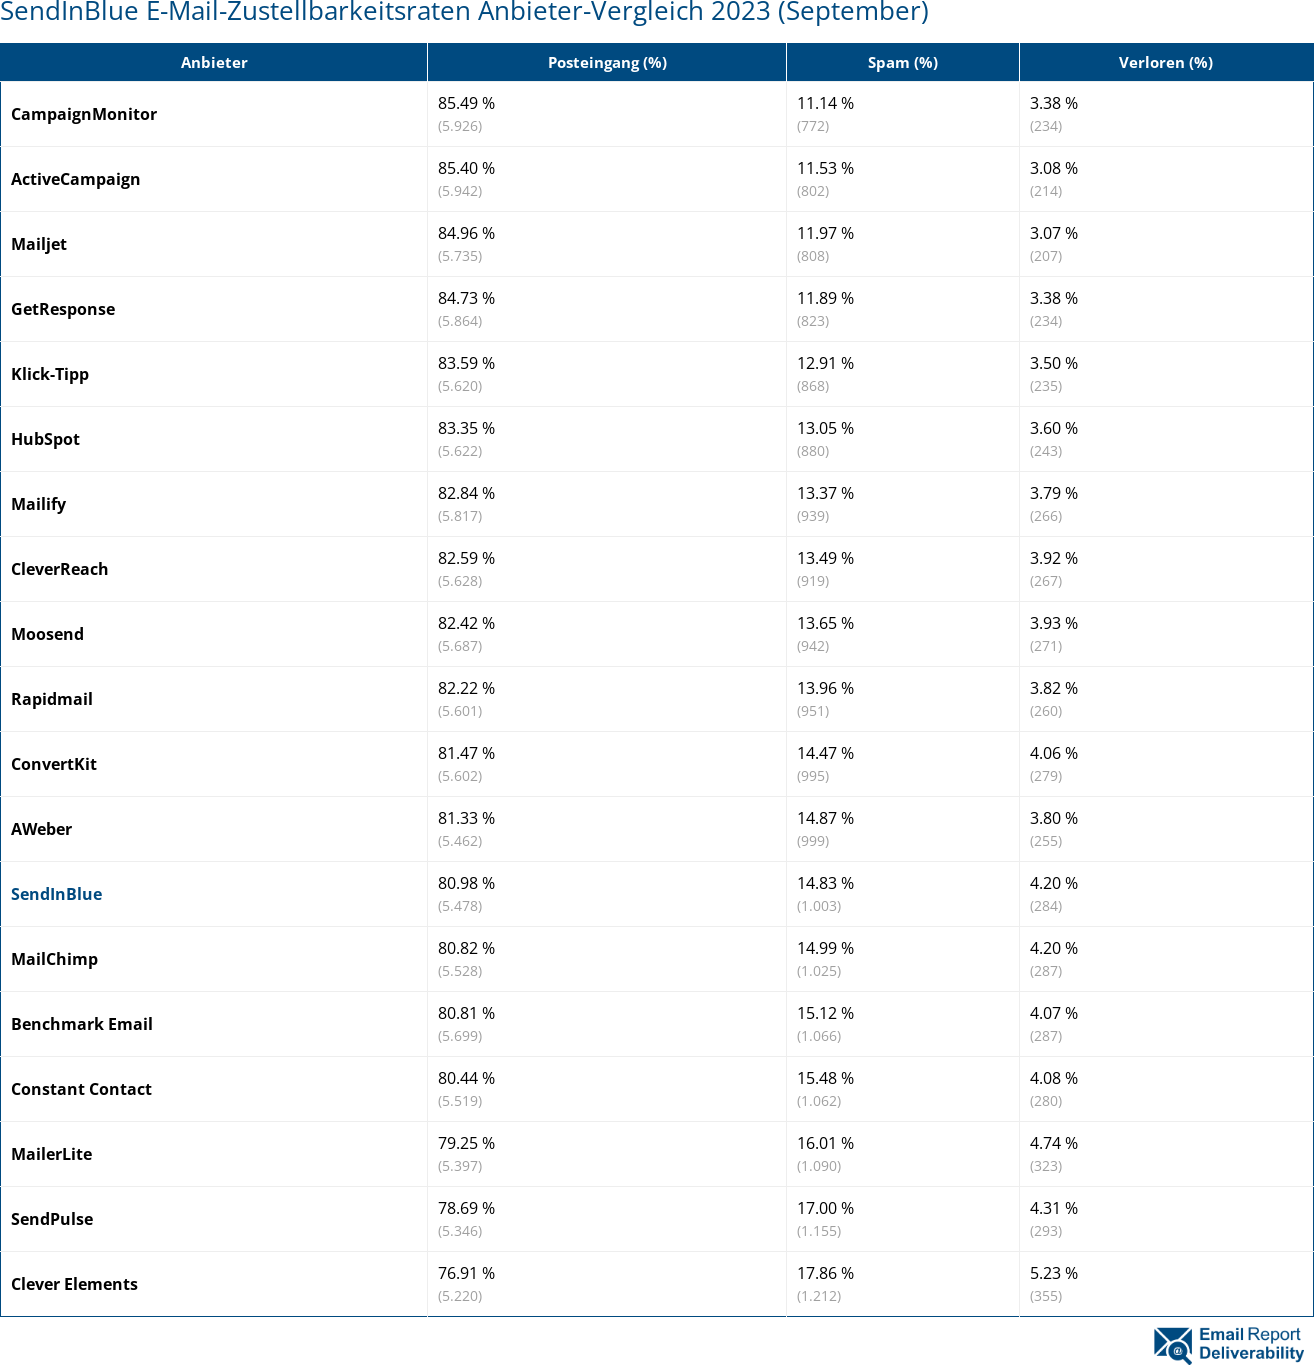 SendInBlue E-Mail-Zustellbarkeitsraten Anbieter-Vergleich 2023 (September)